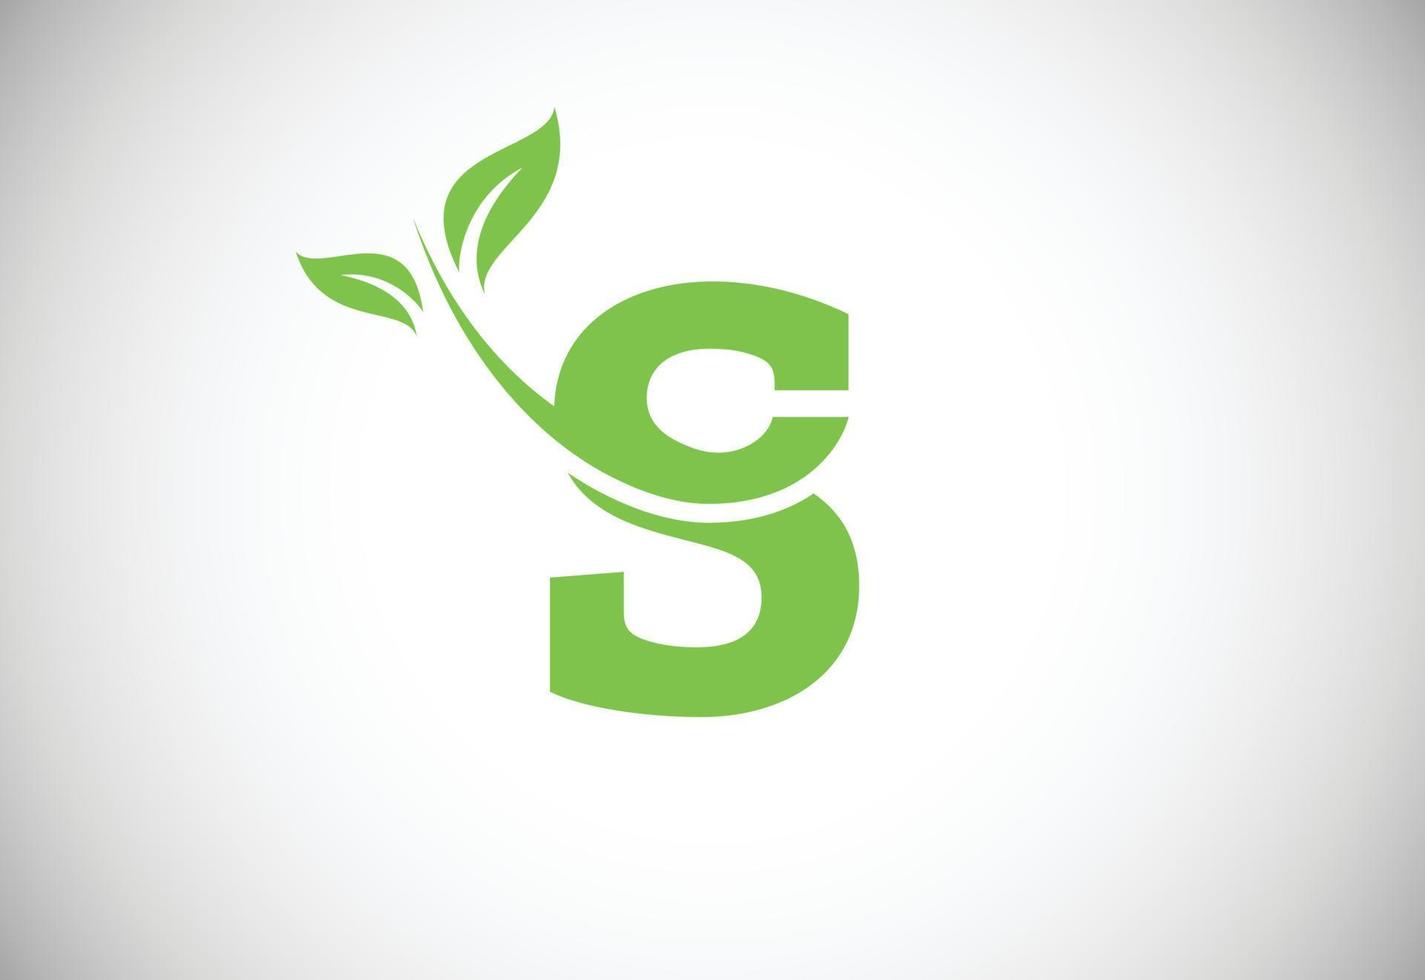 iniziale lettera S e foglia logo. eco-friendly logo concetto. moderno vettore logo per ecologico attività commerciale e azienda identità